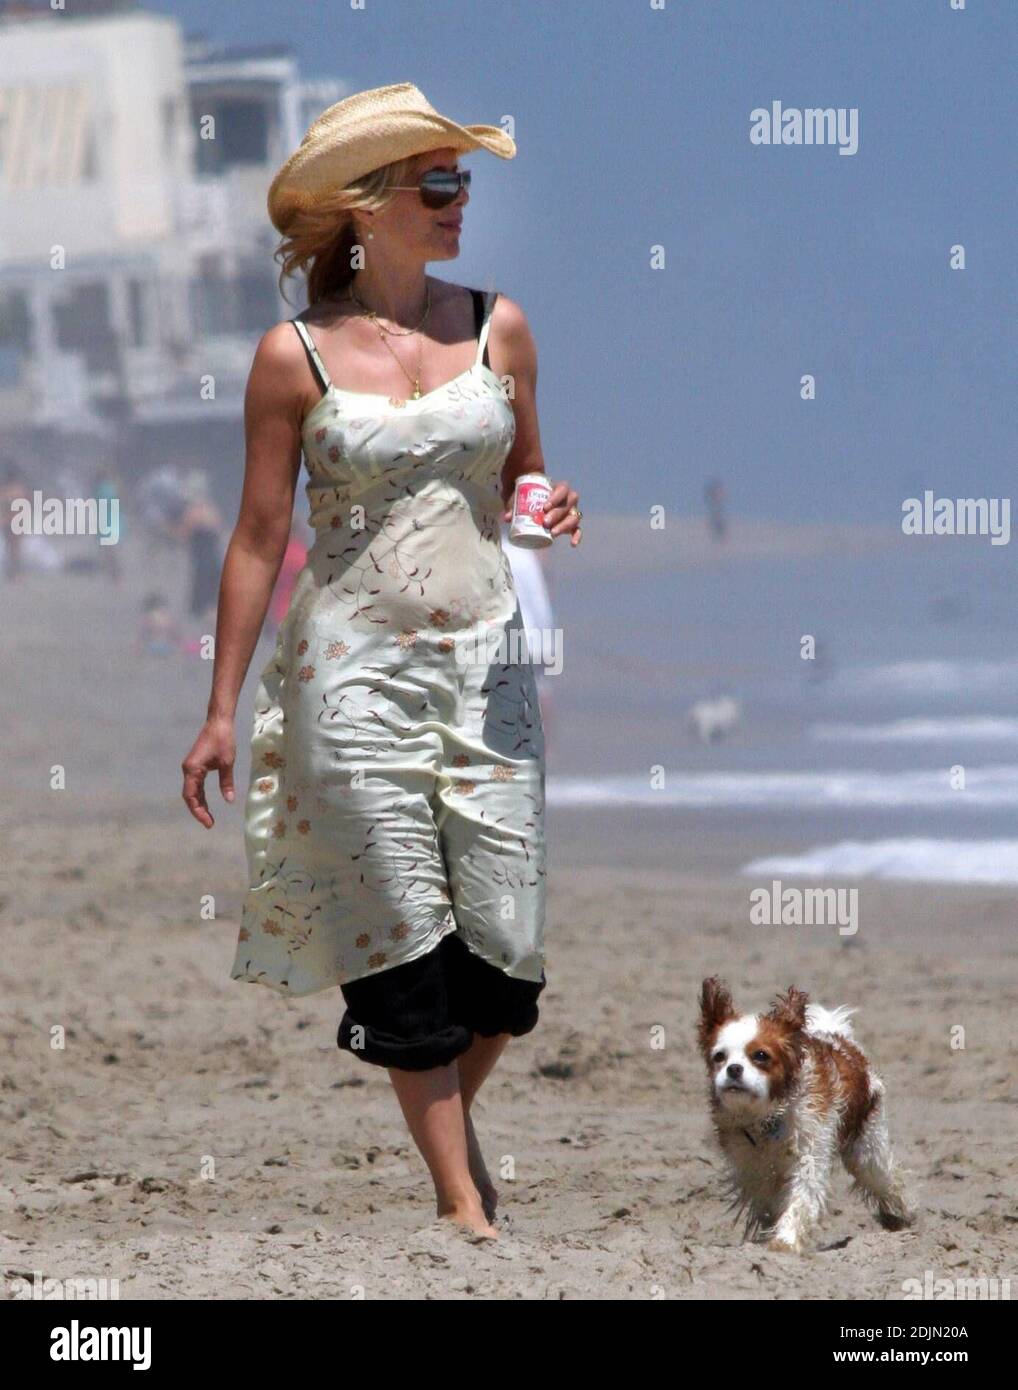 Rosanna Arquette fait une promenade sur la plage avec un ami tout en jouant à FETCH avec quelques chiens. Peut-être l'actrice est-elle consciente de la portée, car elle semble être en fourre-tout un pot de yogourt rempli de sable. Malibu, Calif. 7/9/06 Banque D'Images